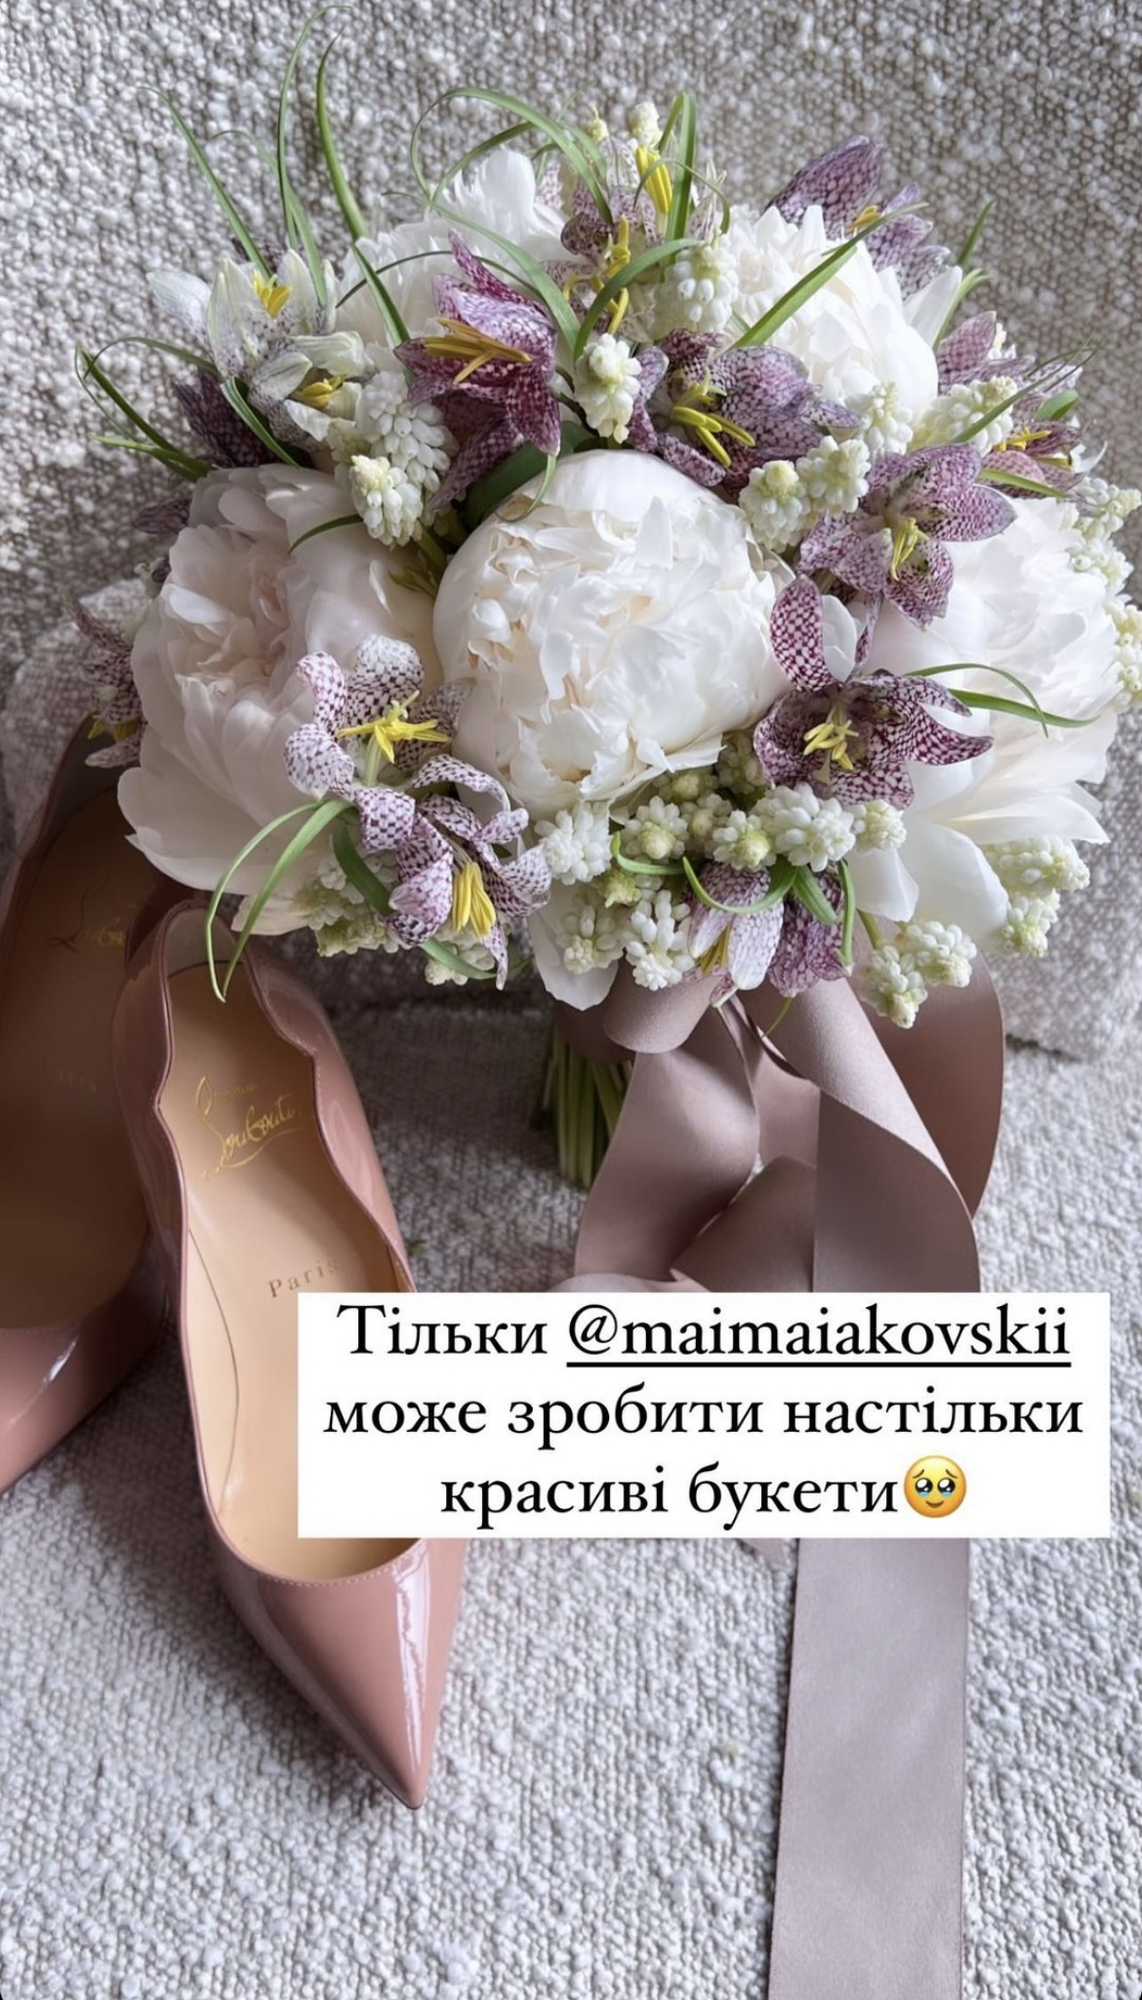 "Міс Україна Всесвіт" Вікторія Апанасенко вийшла заміж. Фото